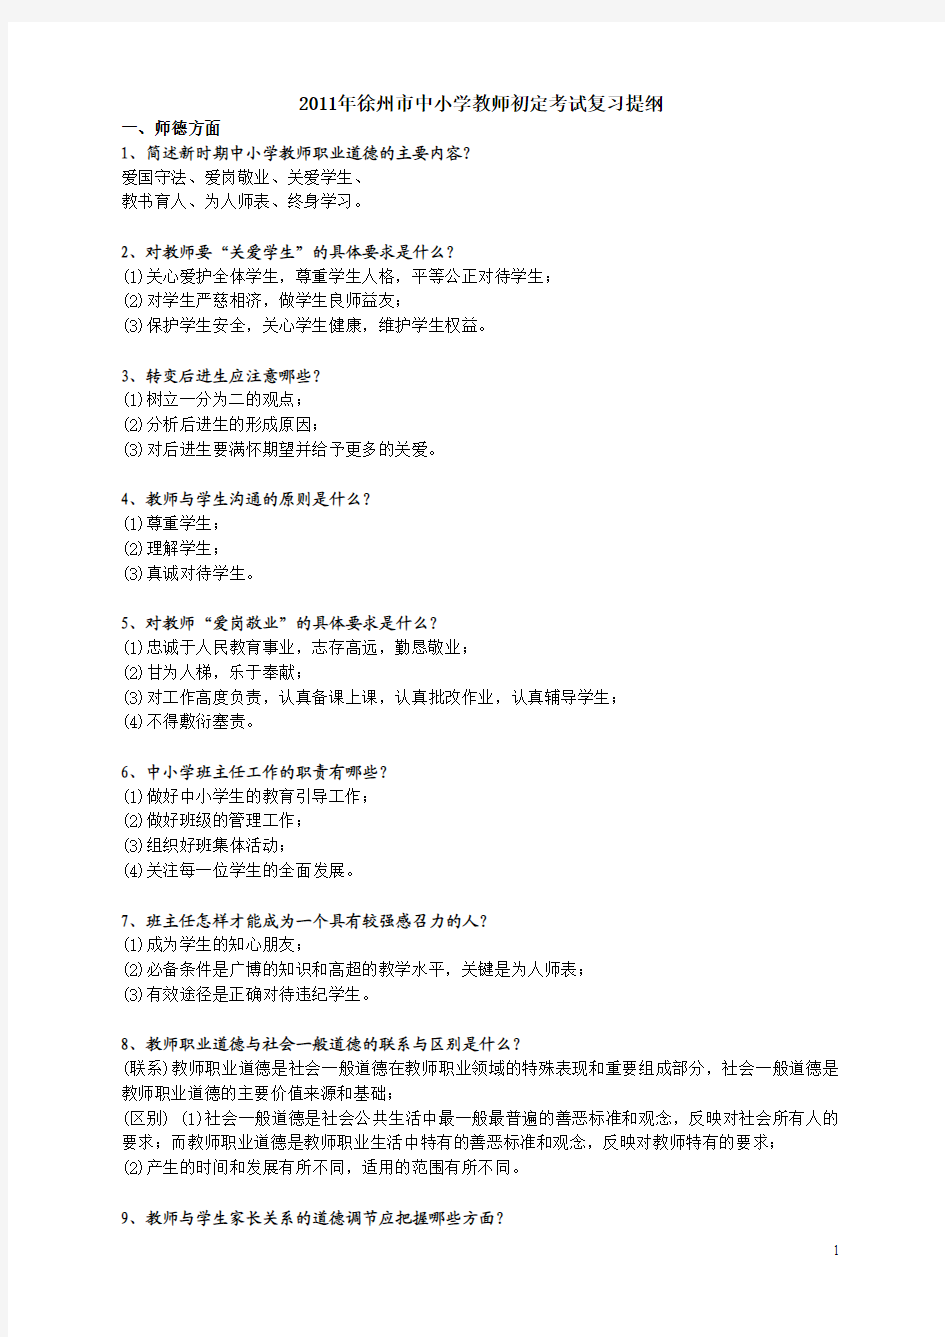 2011年徐州市中小学教师初定考试复习提纲及全答案(全)